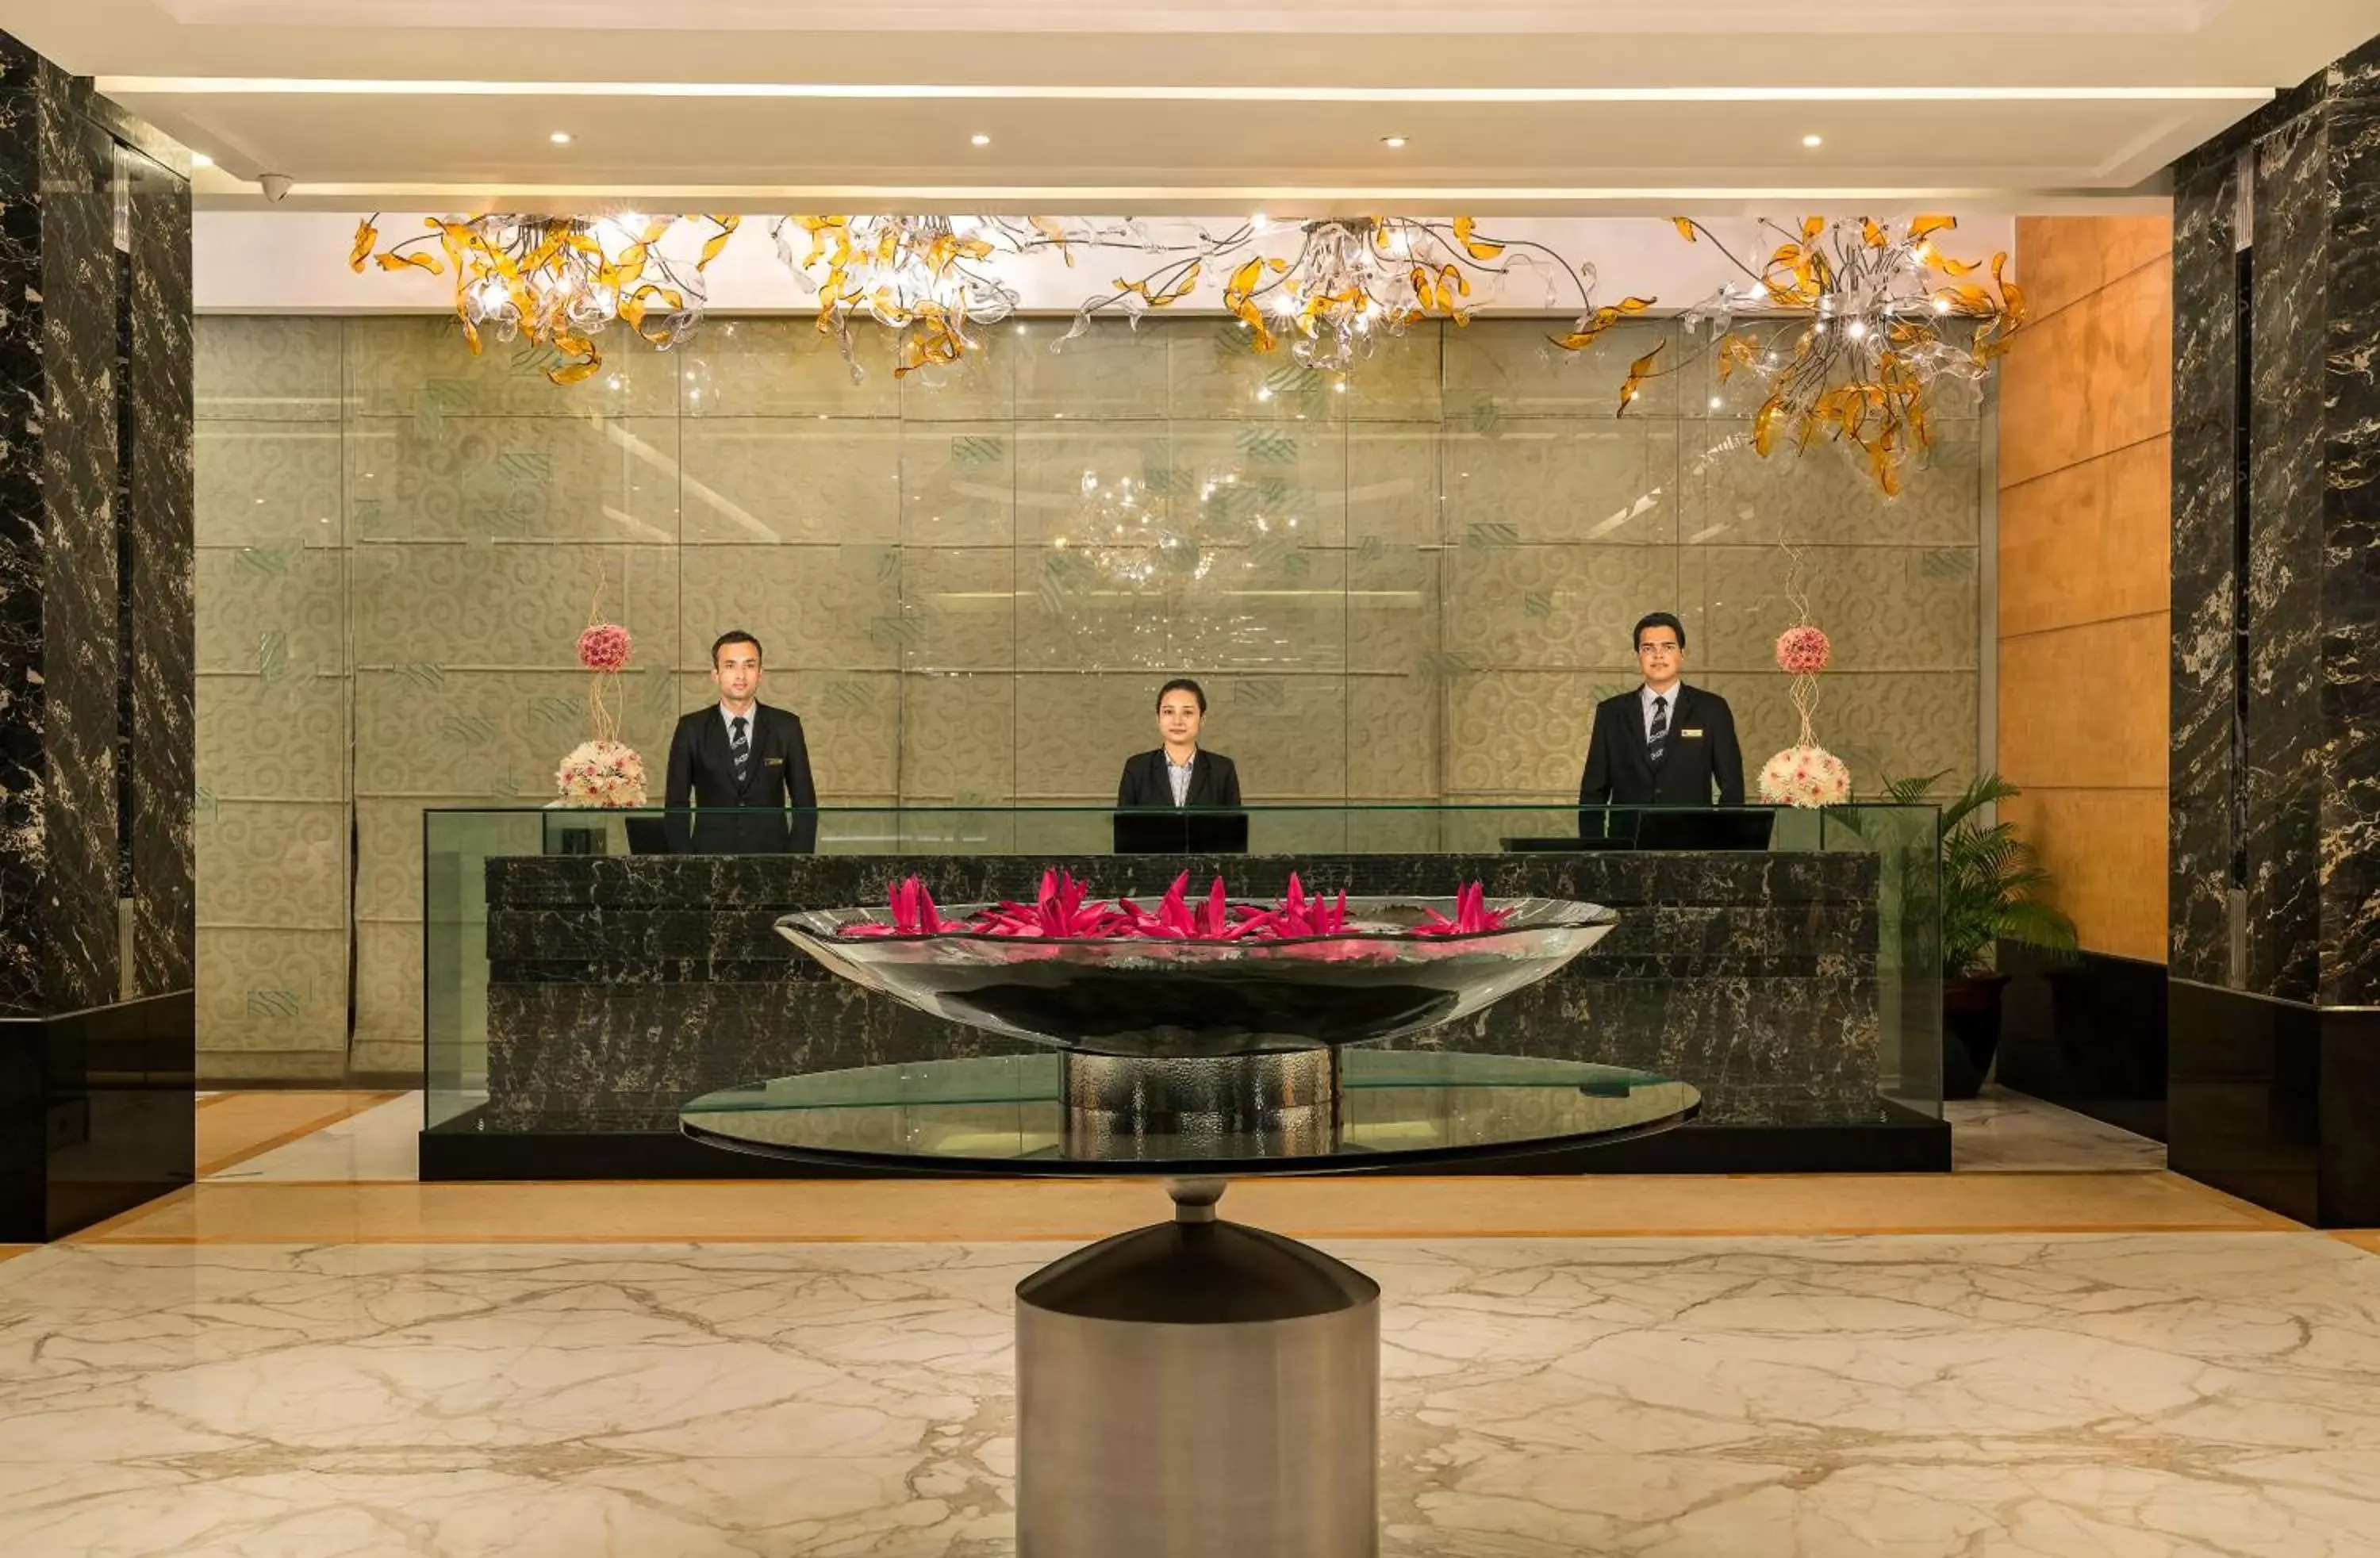 Staff, Lobby/Reception in Taj Club House